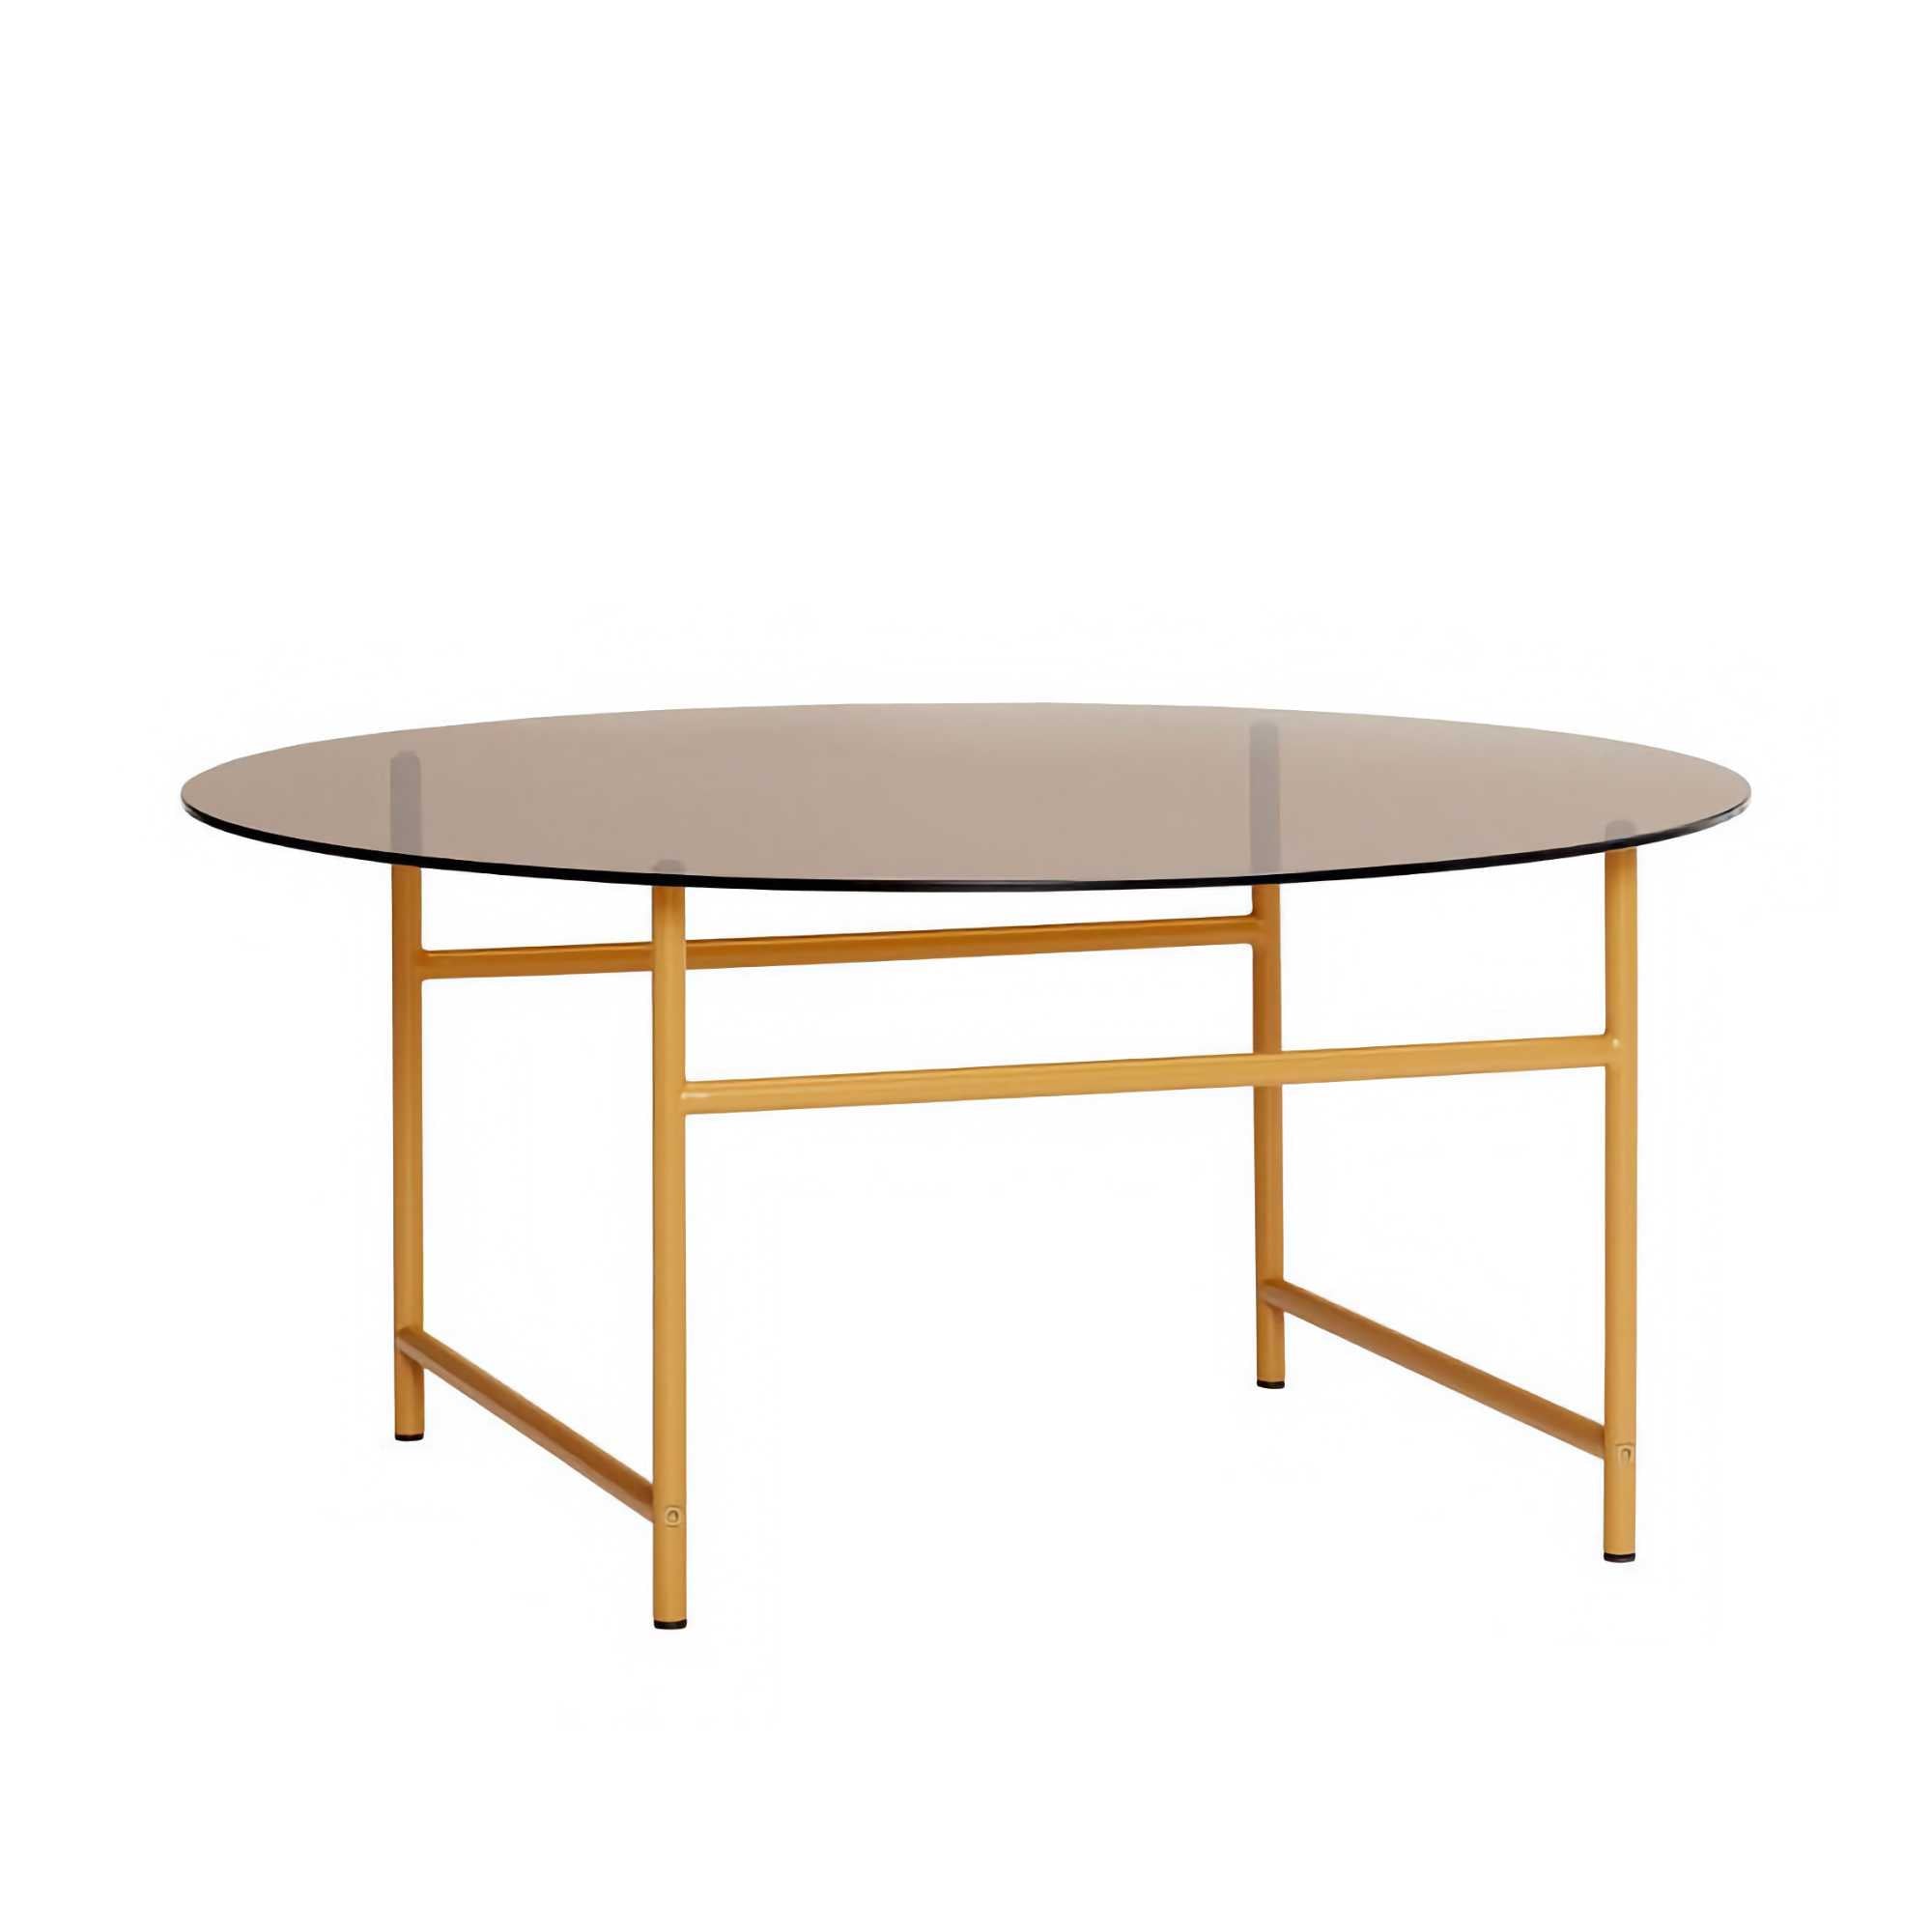 Hübsch Pond Coffee Table, Brown/Orange